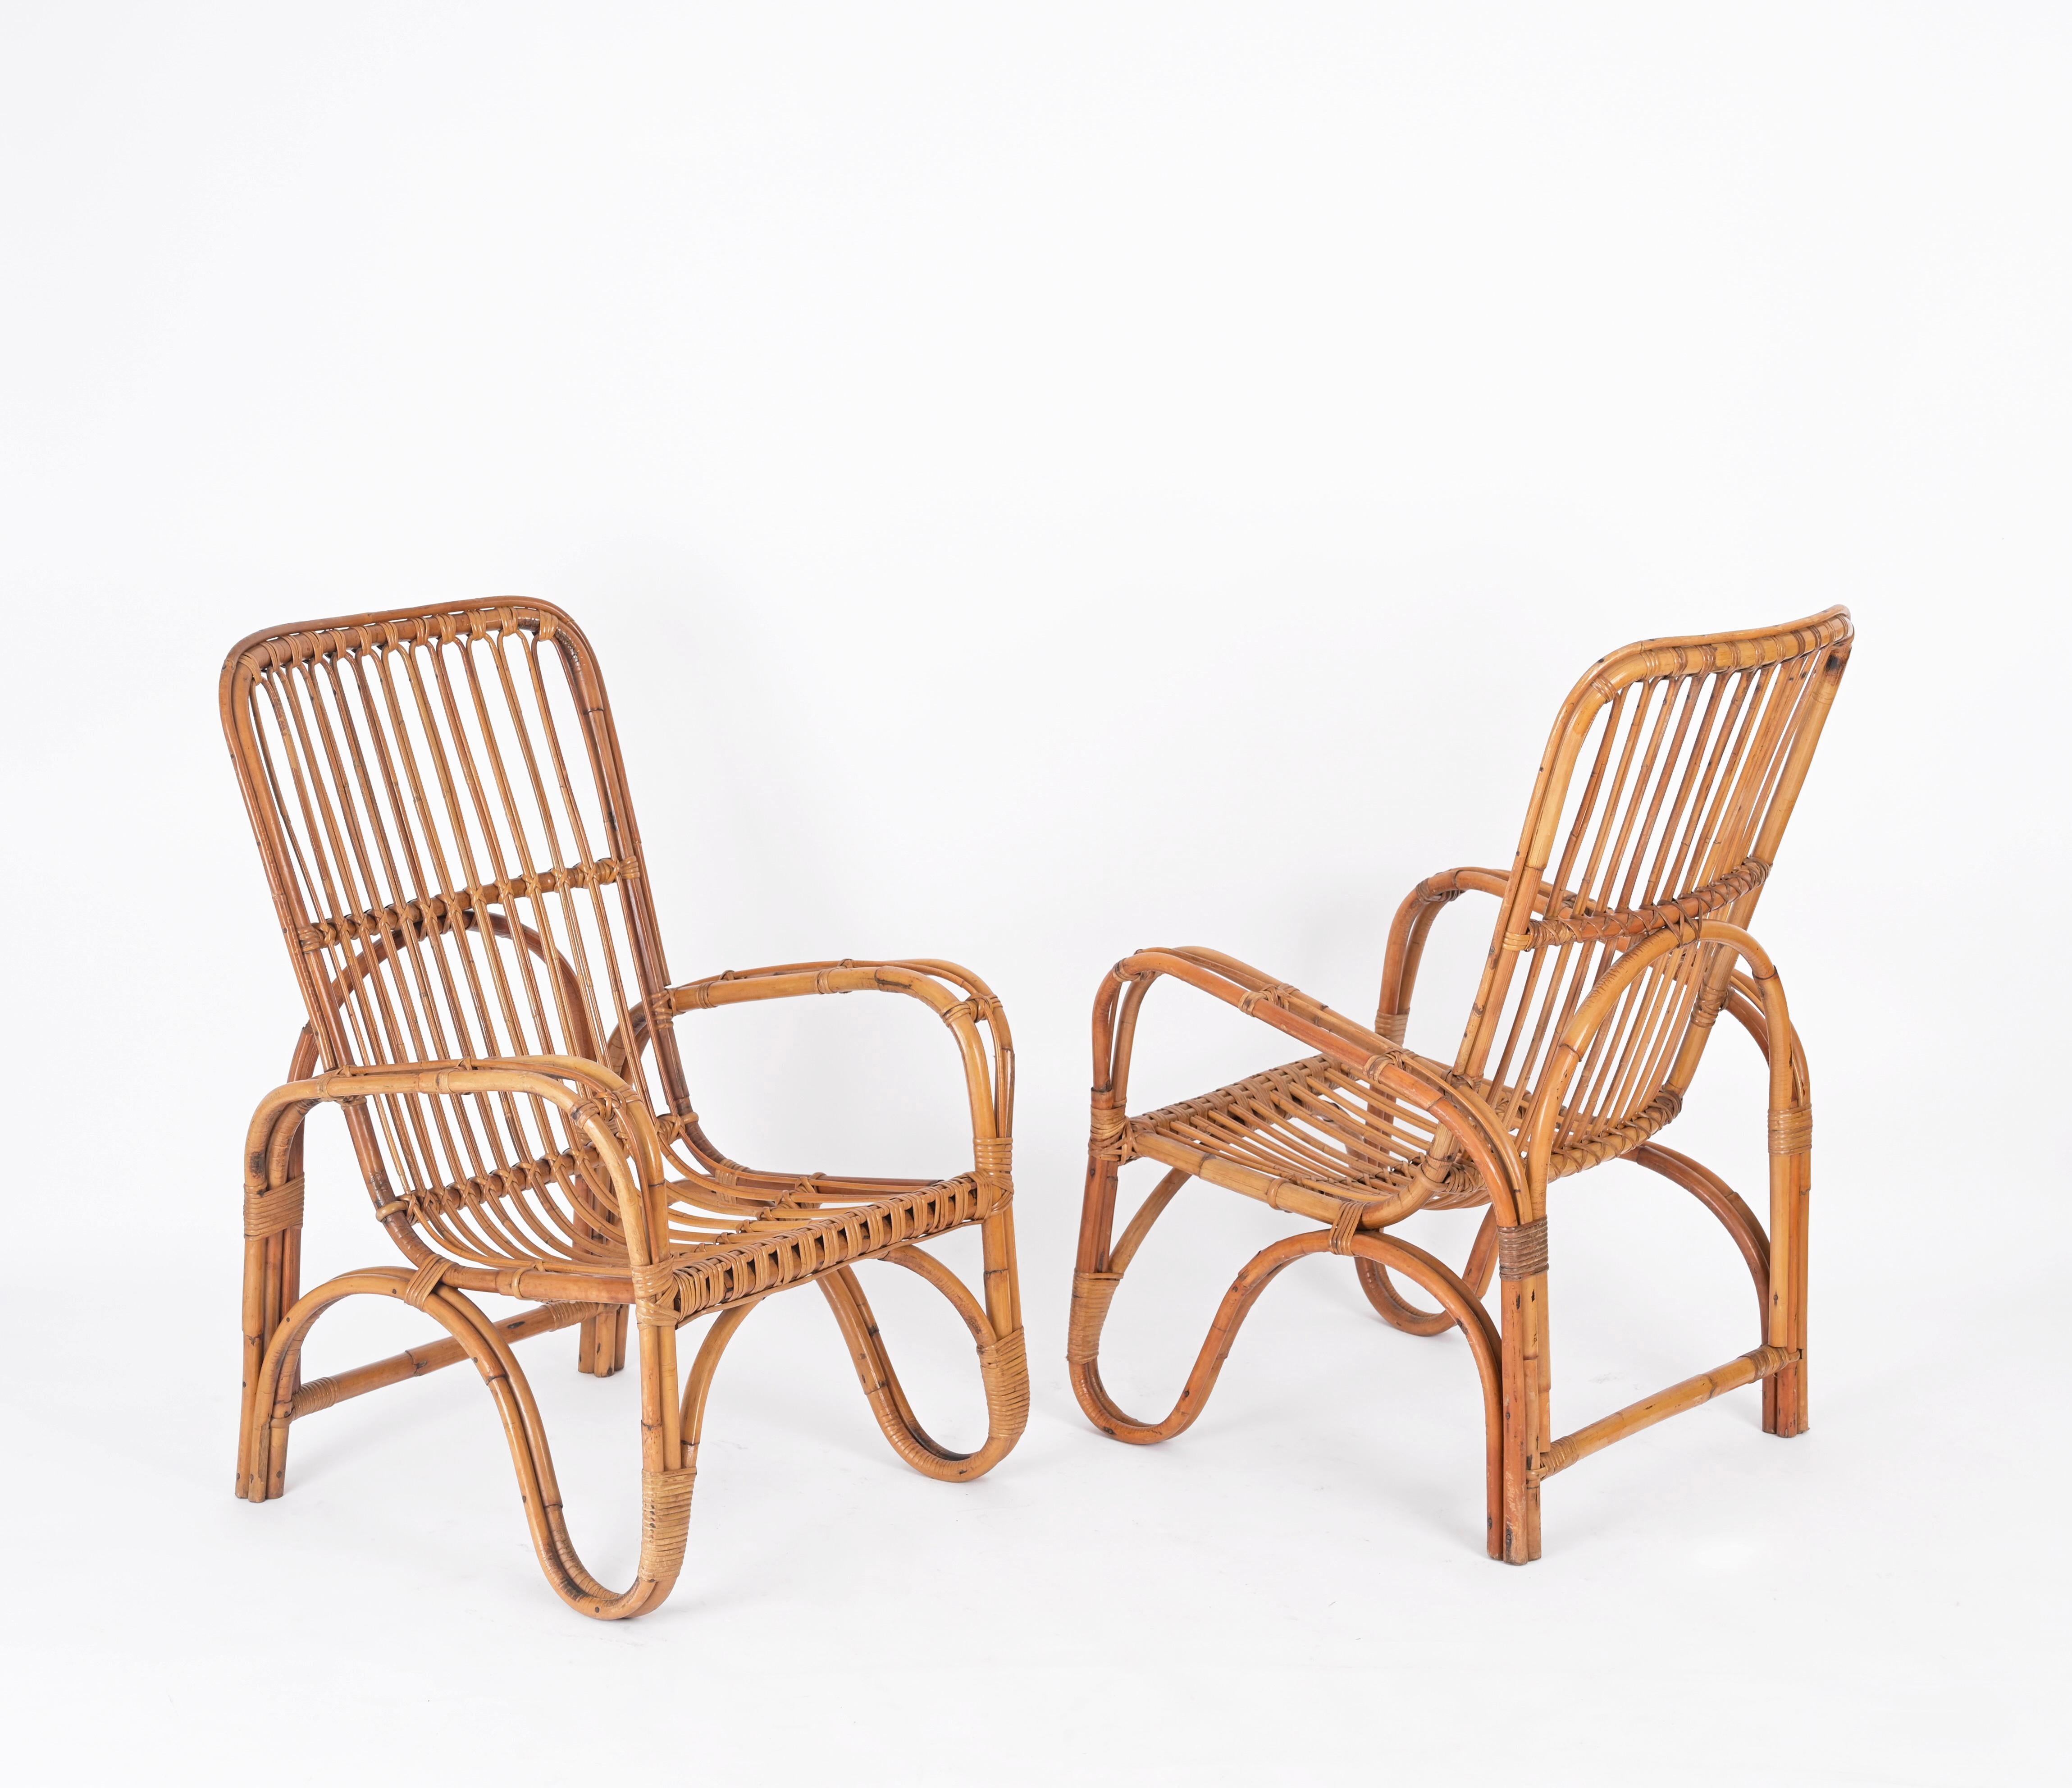 Fantastique paire de fauteuils de style Riviera française du milieu du siècle, entièrement fabriqués en rotin courbé, bambou et osier tressé à la main. Ces charmants fauteuils ont été conçus en Italie dans les années 1960 et sont attribués à Tito